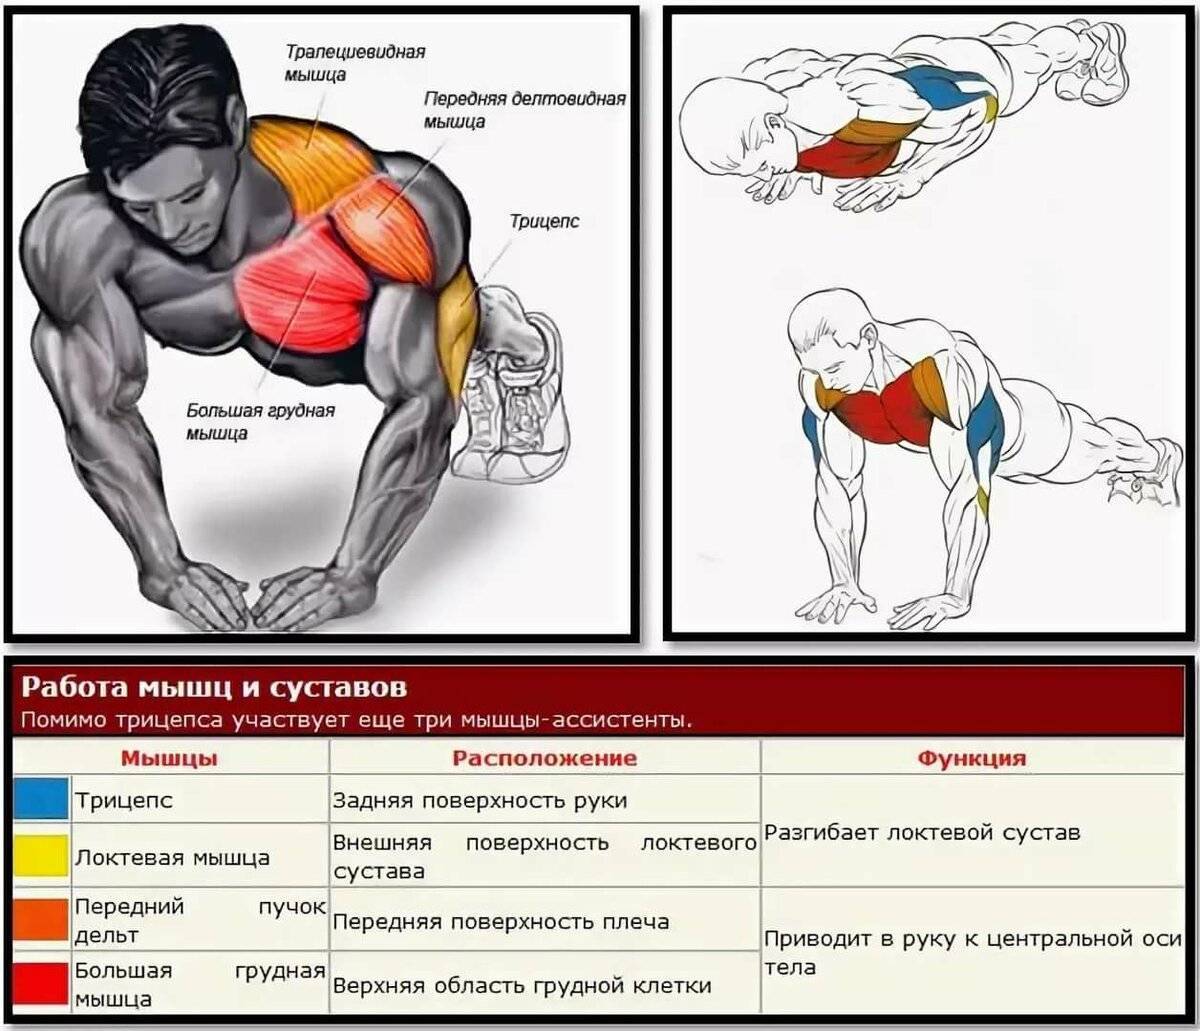 Упражнения на широчайшие мышцы спины: как накачать крылья дома или в зале